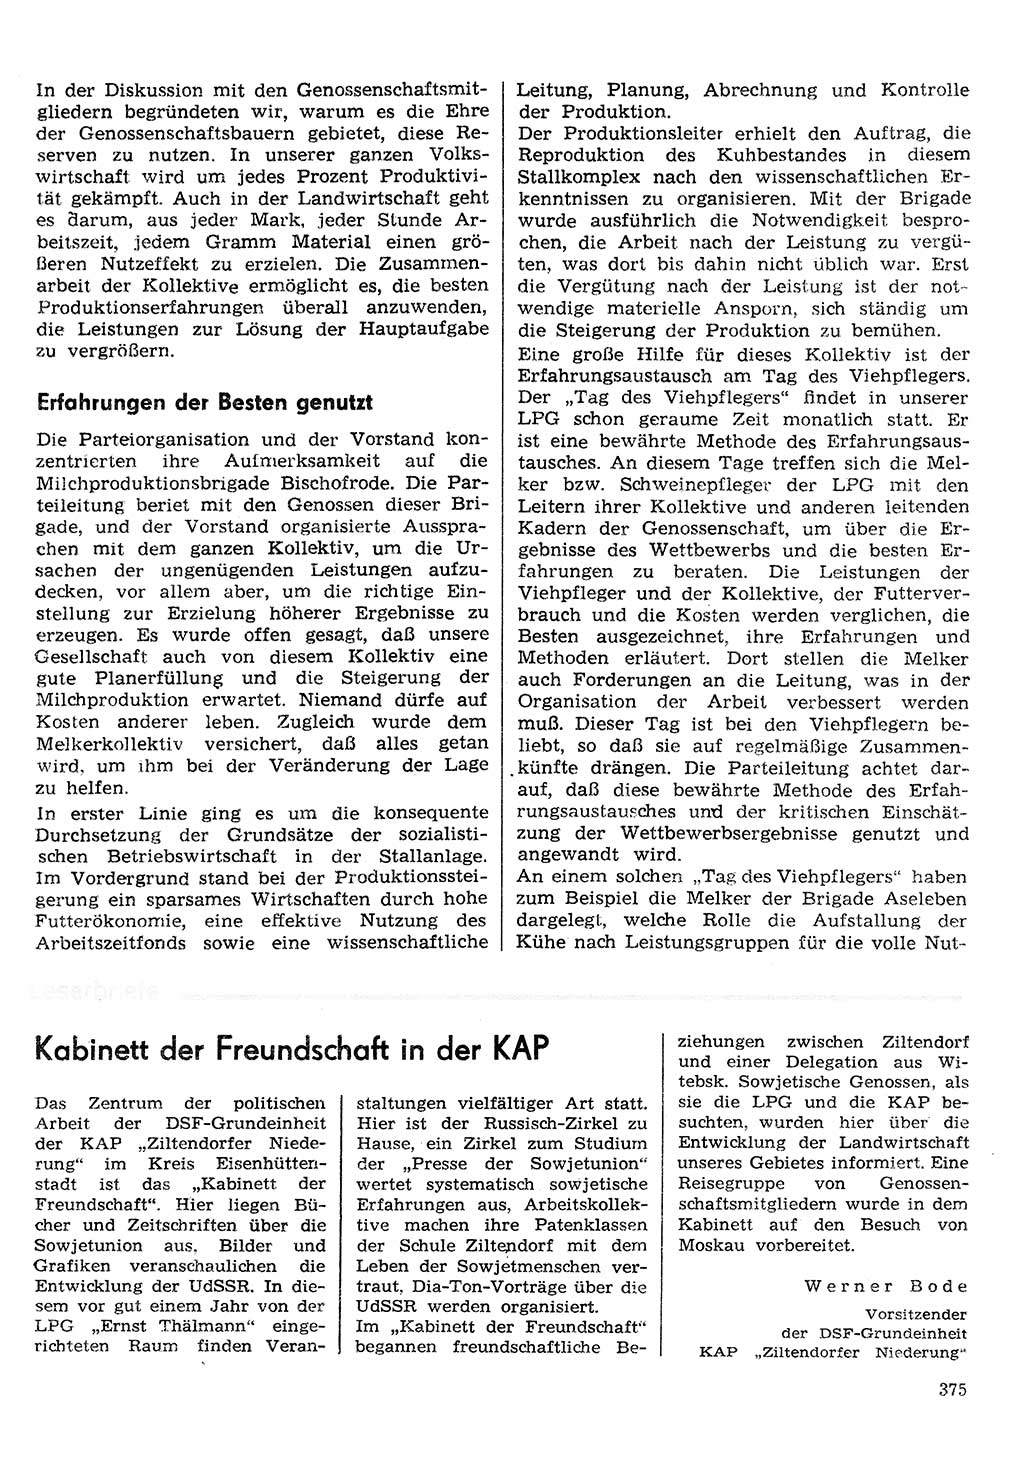 Neuer Weg (NW), Organ des Zentralkomitees (ZK) der SED (Sozialistische Einheitspartei Deutschlands) für Fragen des Parteilebens, 30. Jahrgang [Deutsche Demokratische Republik (DDR)] 1975, Seite 375 (NW ZK SED DDR 1975, S. 375)